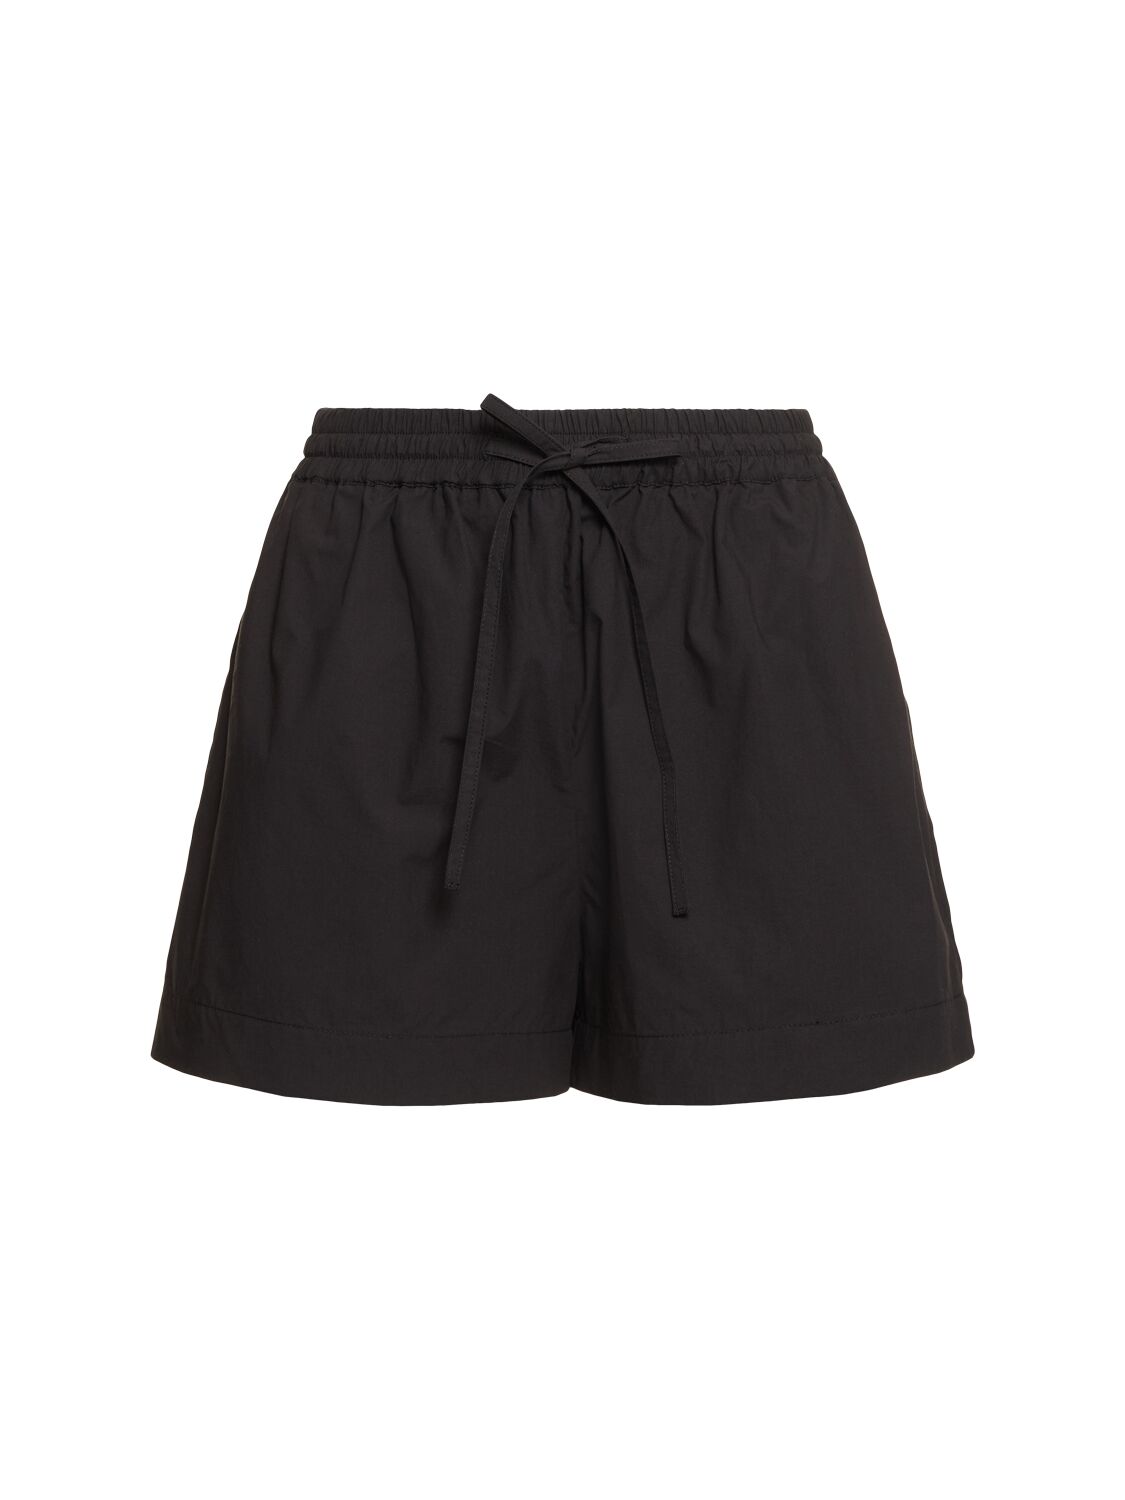 Matteau Cotton Elastic Shorts In Black